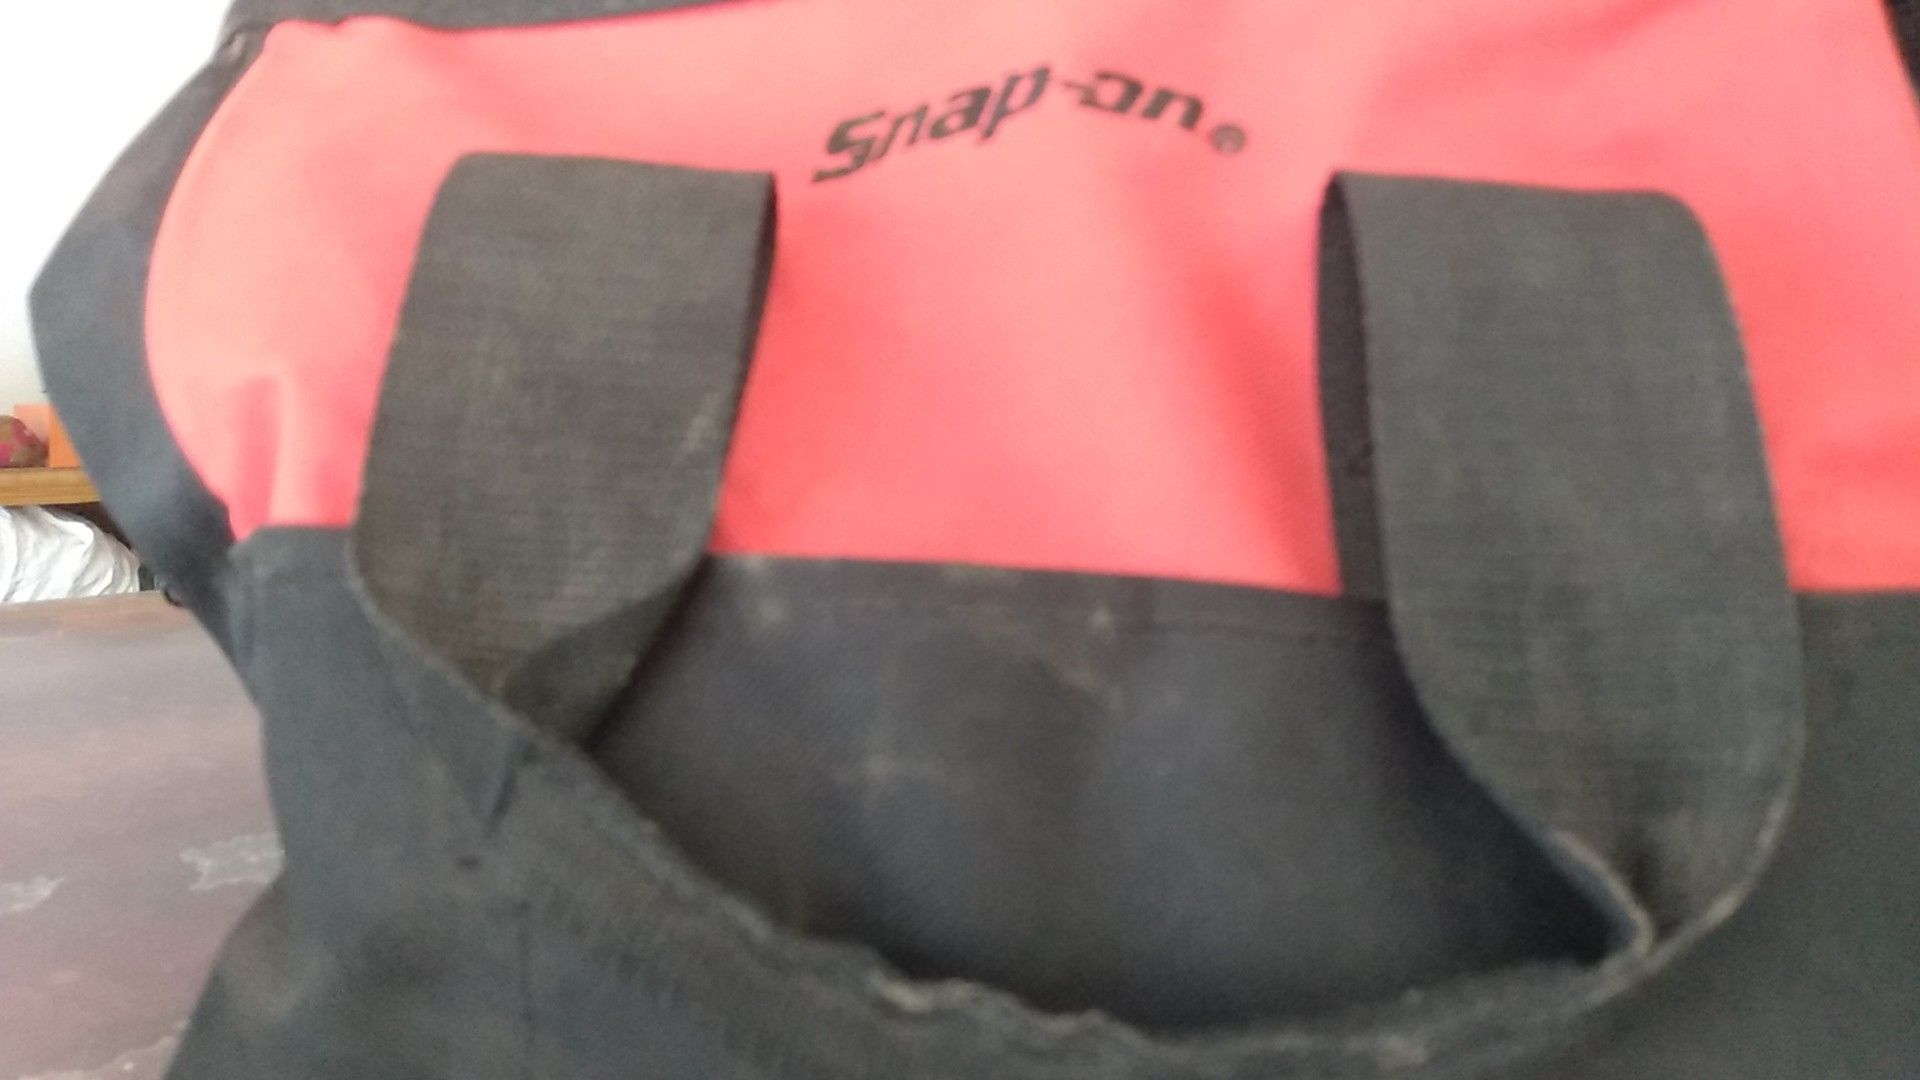 Snap-on tool bag